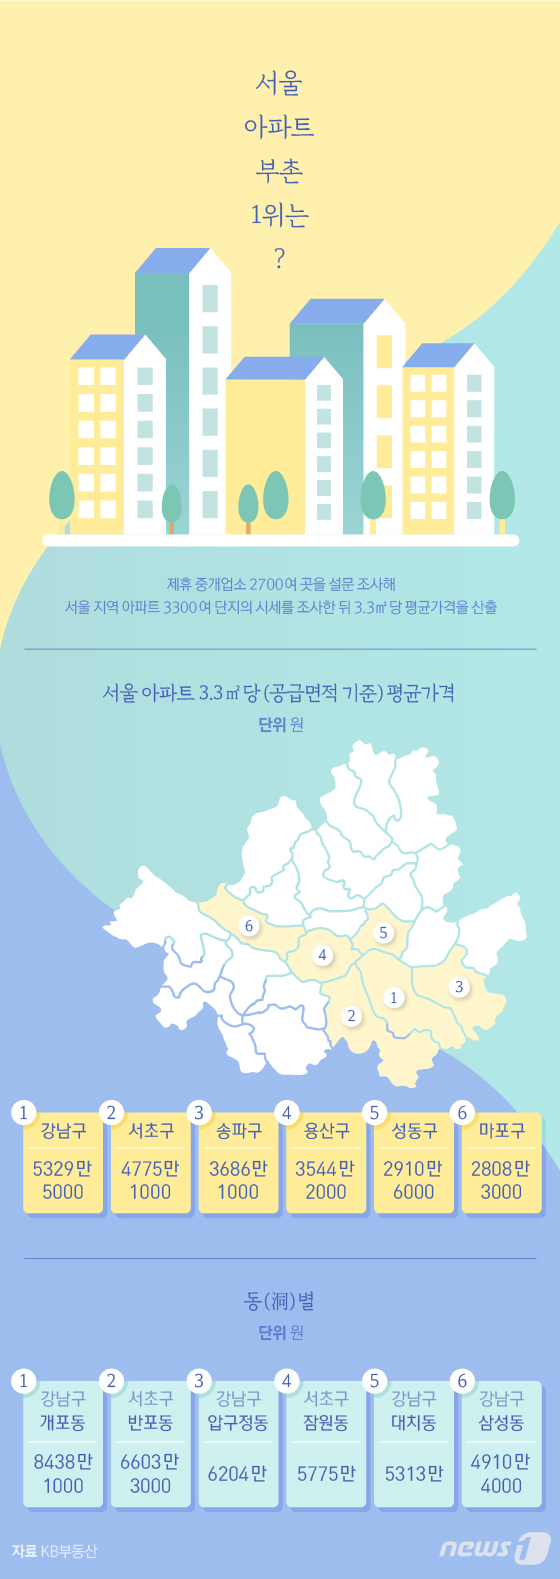 [그래픽뉴스] 서울 아파트 부촌 1위는?